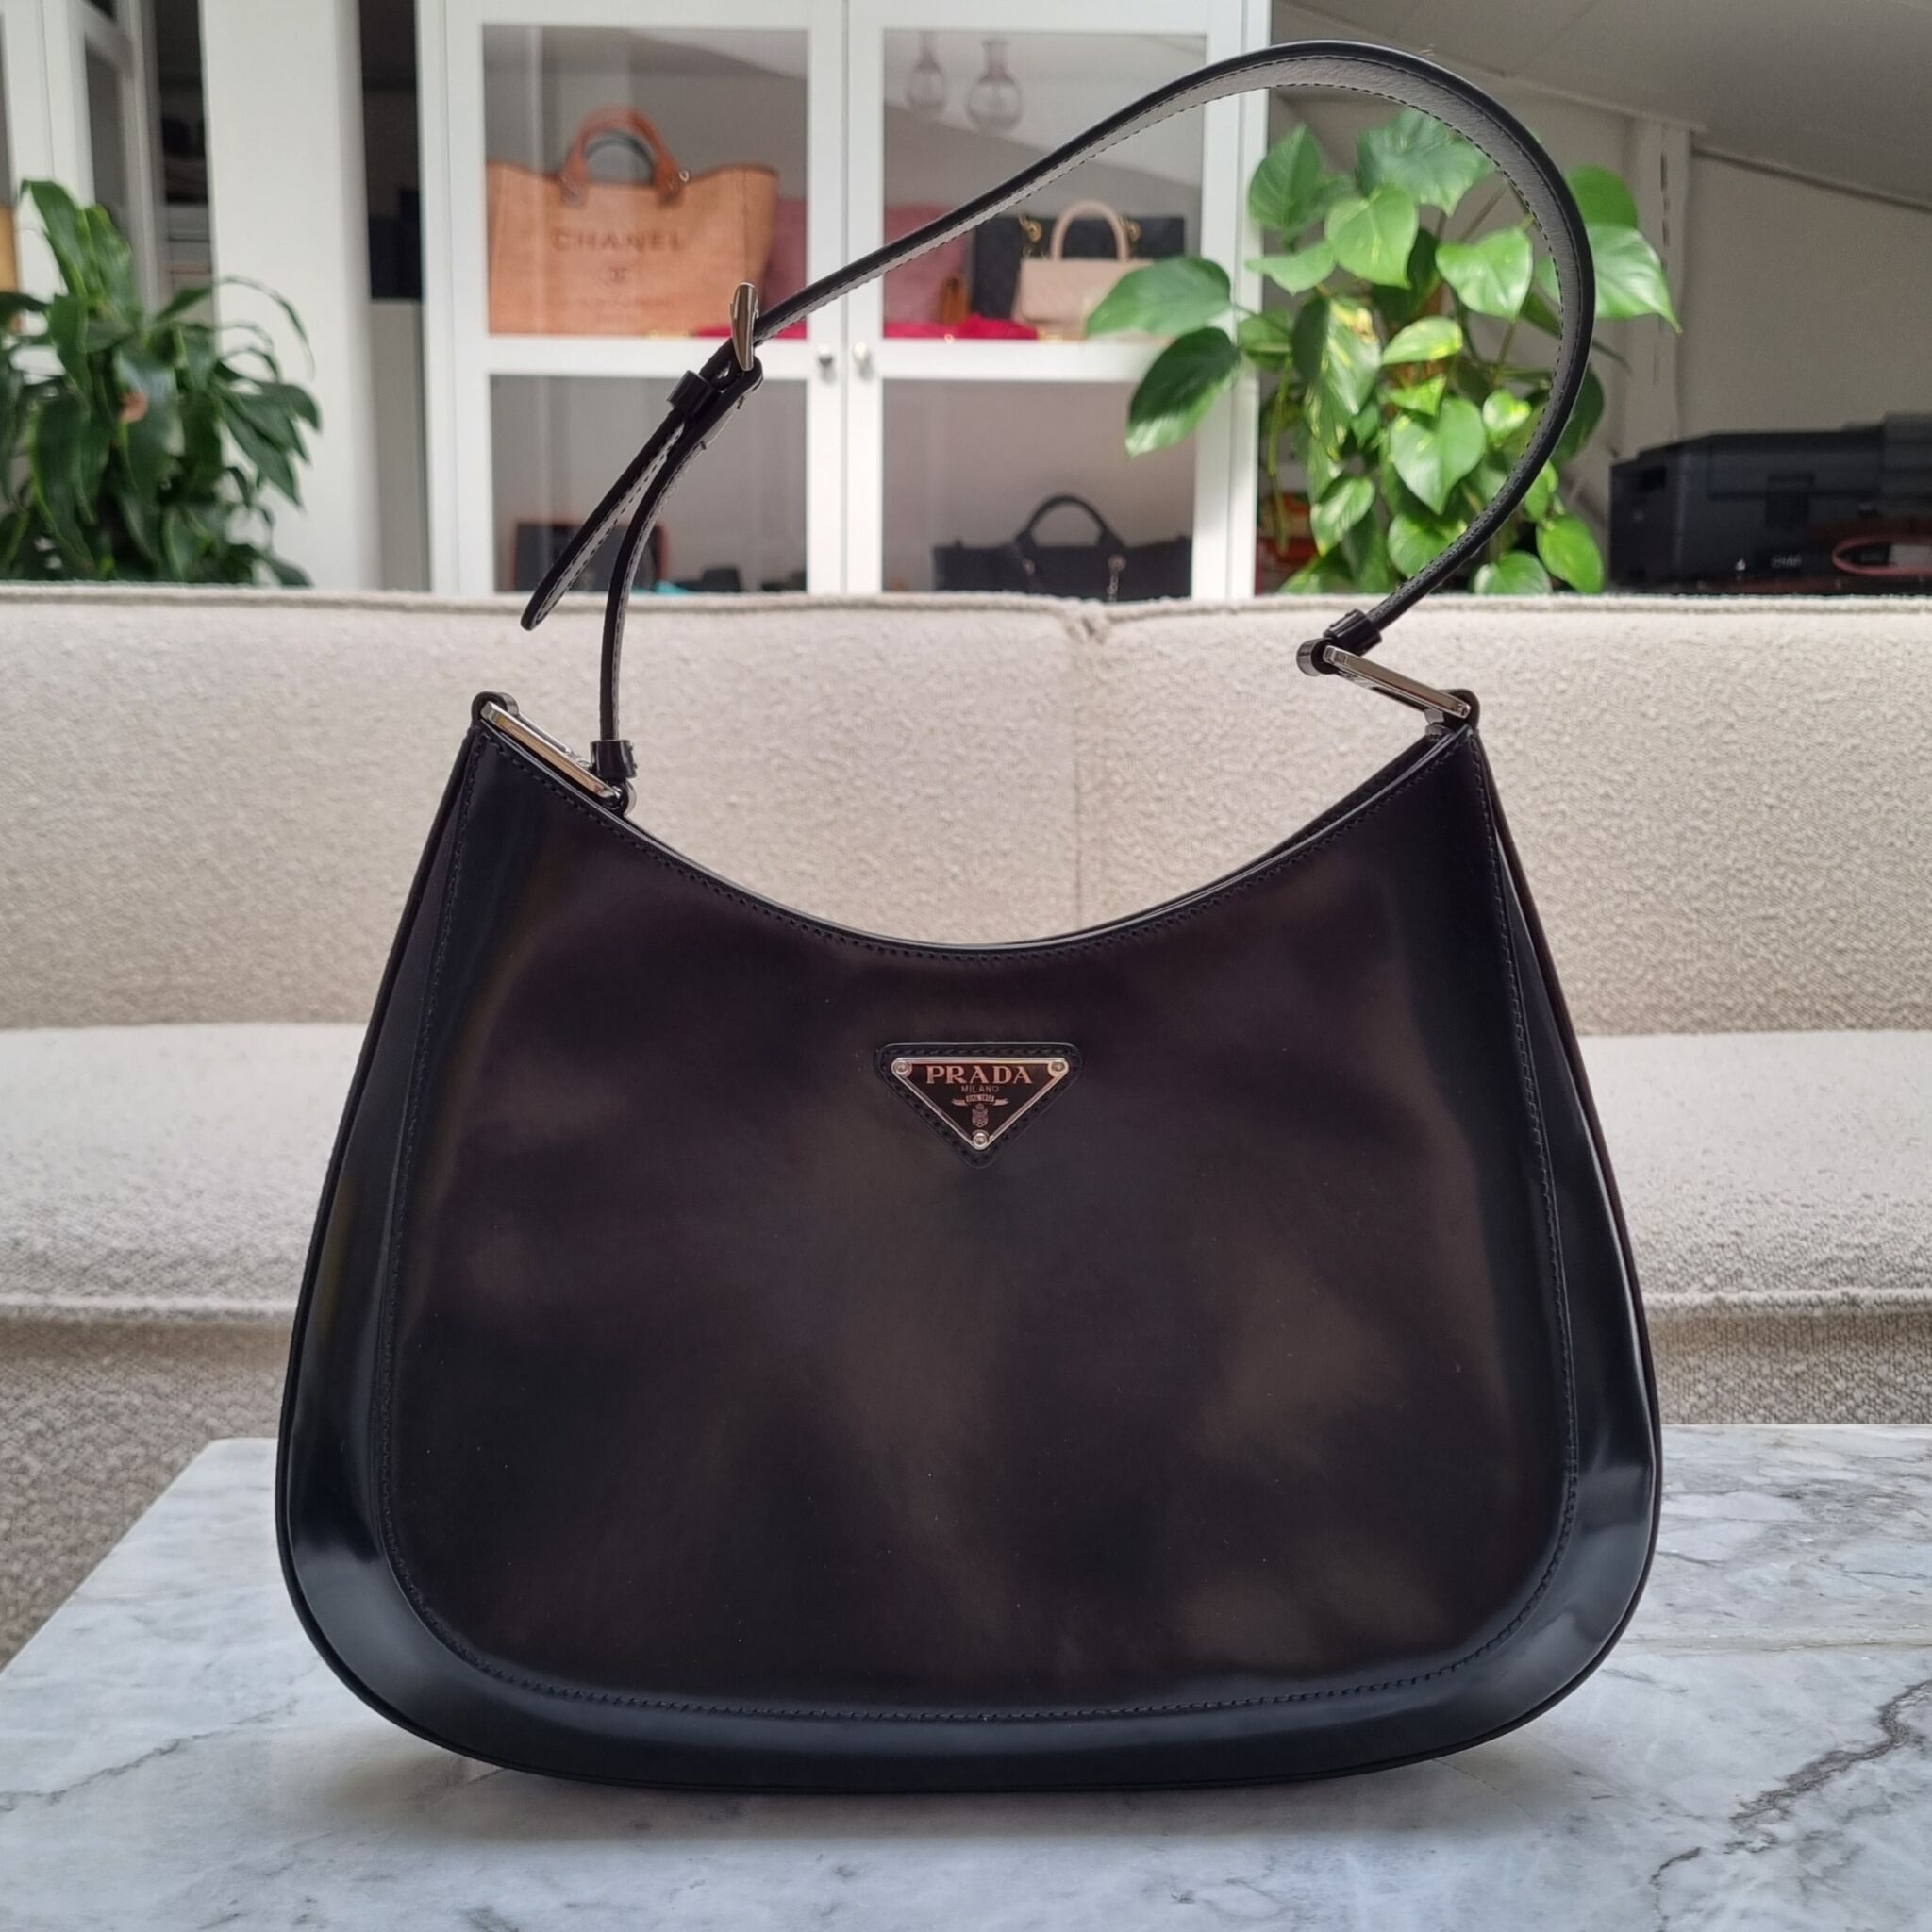 Prada Cleo Shoulder Bag Brushed Leather Black in Brushed Leather